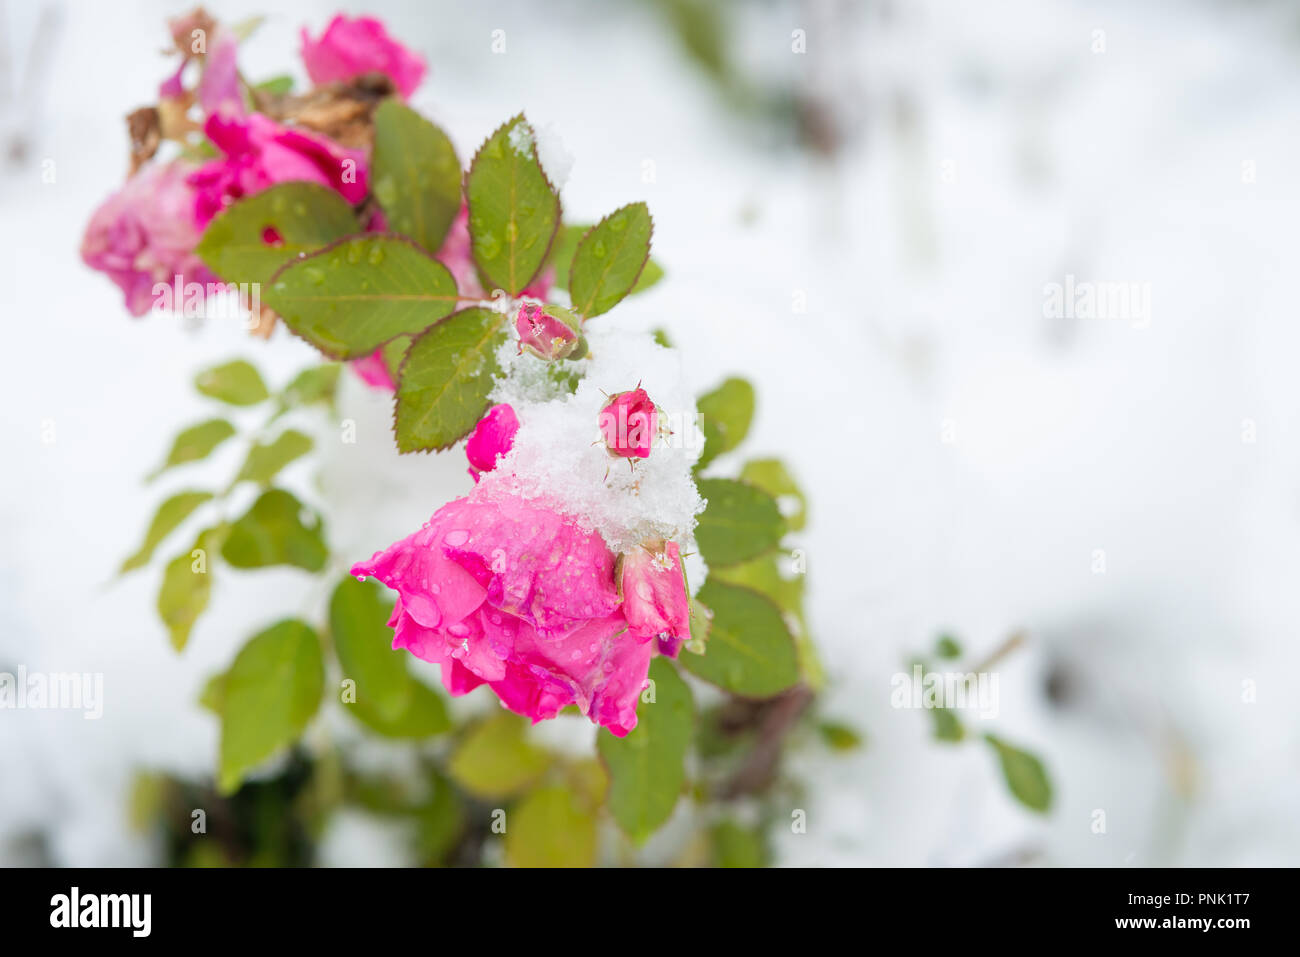 Rosen aus der Hardy Strauch rose Sorte, Frontenac, durch Schnee bei einer unseasonable Schneesturm im zentralen Alberta, Kanada abgedeckt Stockfoto